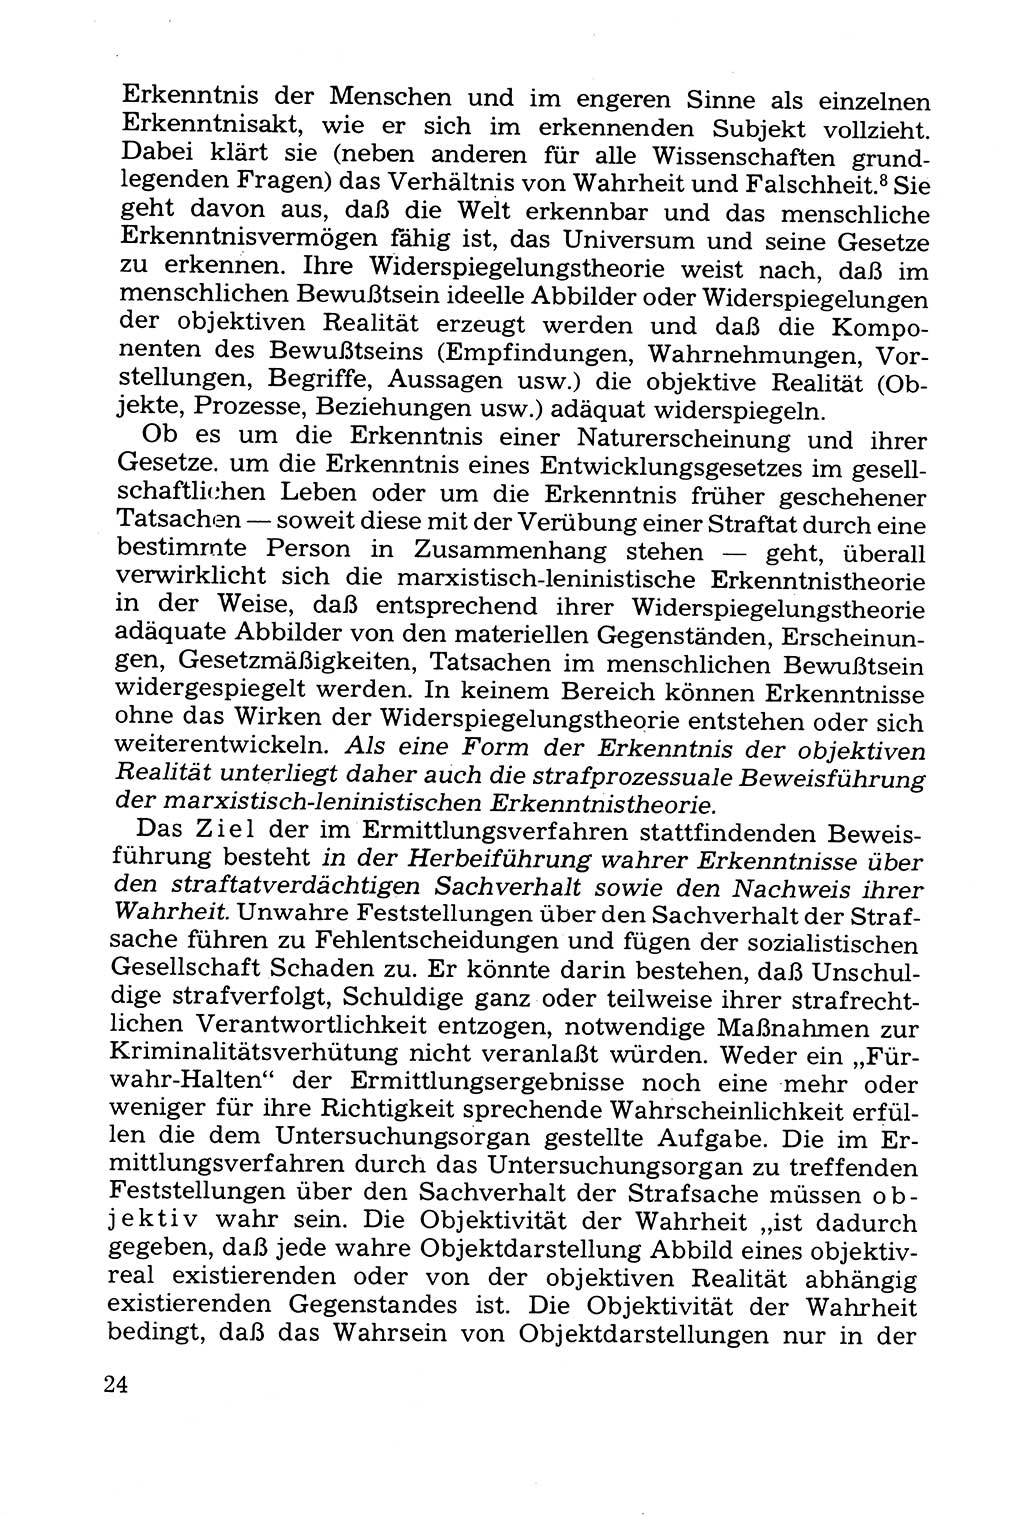 Grundfragen der Beweisführung im Ermittlungsverfahren [Deutsche Demokratische Republik (DDR)] 1980, Seite 24 (Bws.-Fhrg. EV DDR 1980, S. 24)